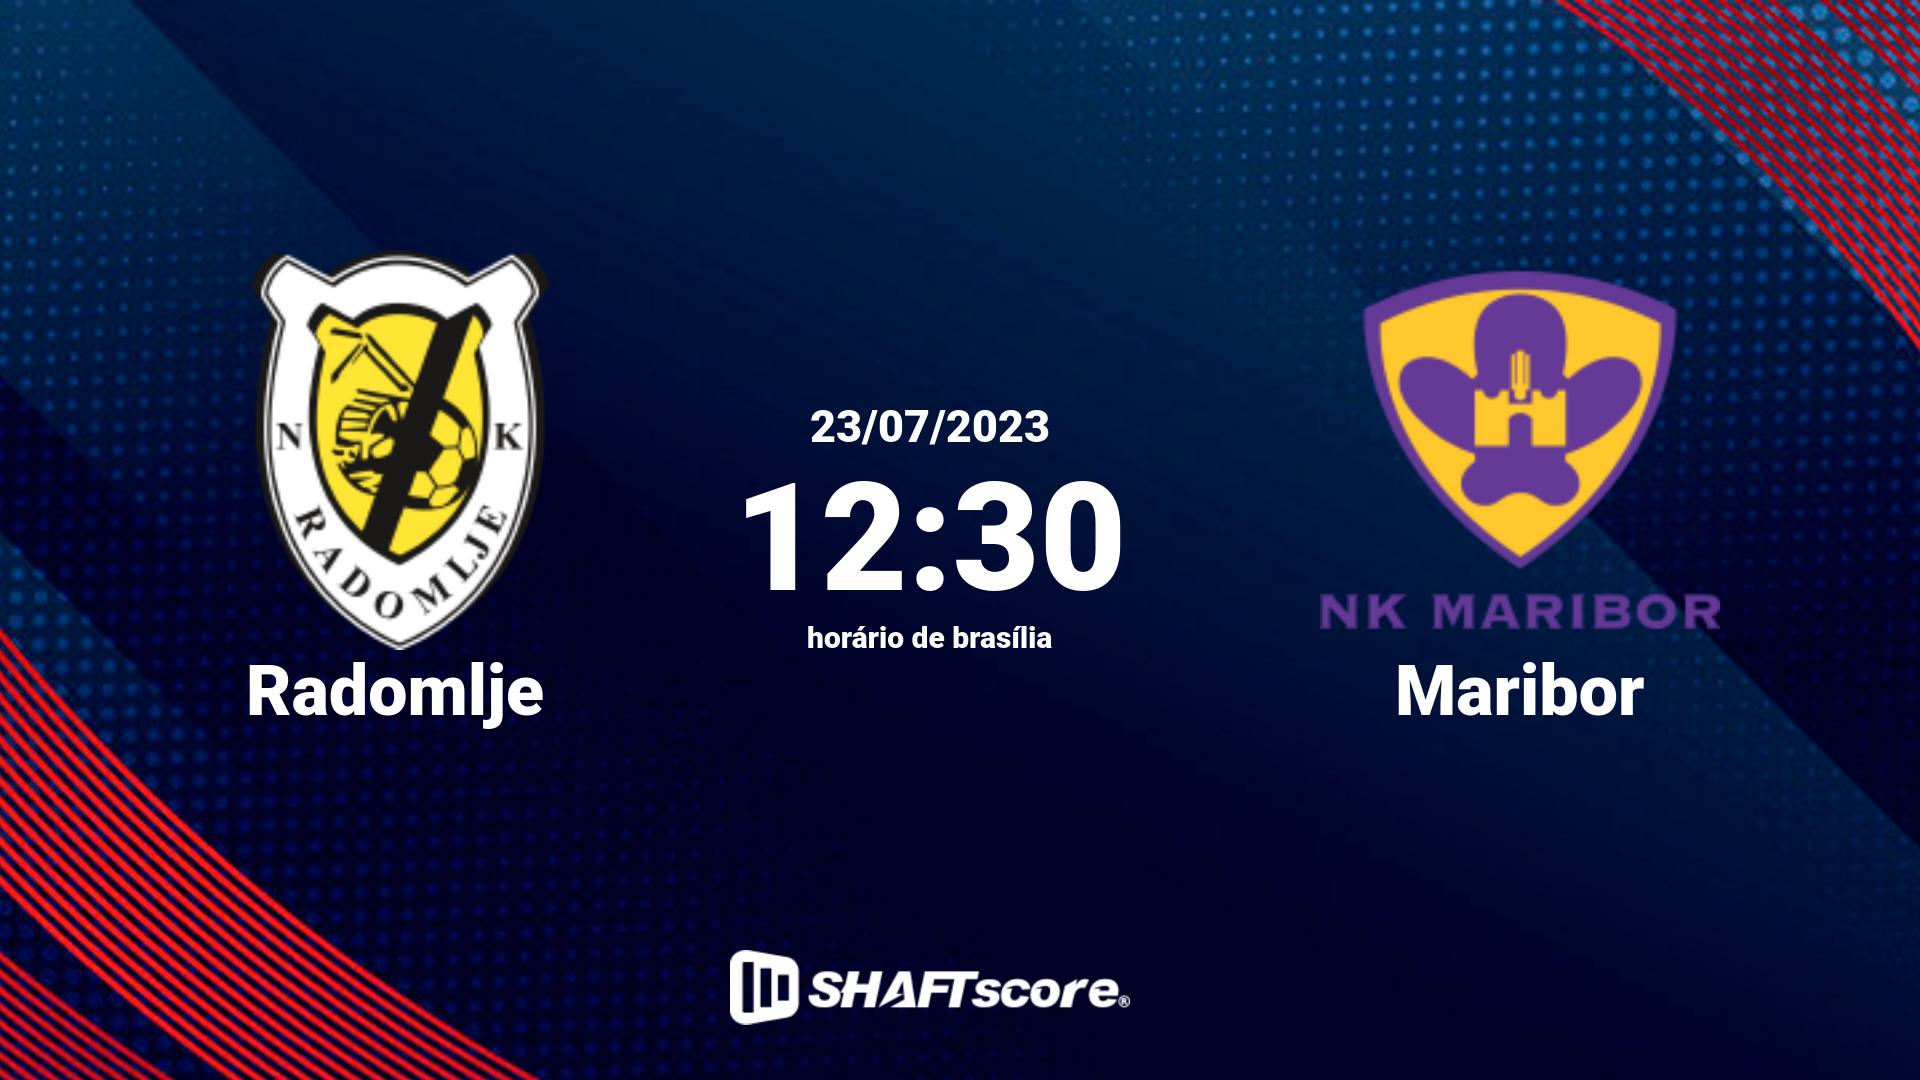 Estatísticas do jogo Radomlje vs Maribor 23.07 12:30